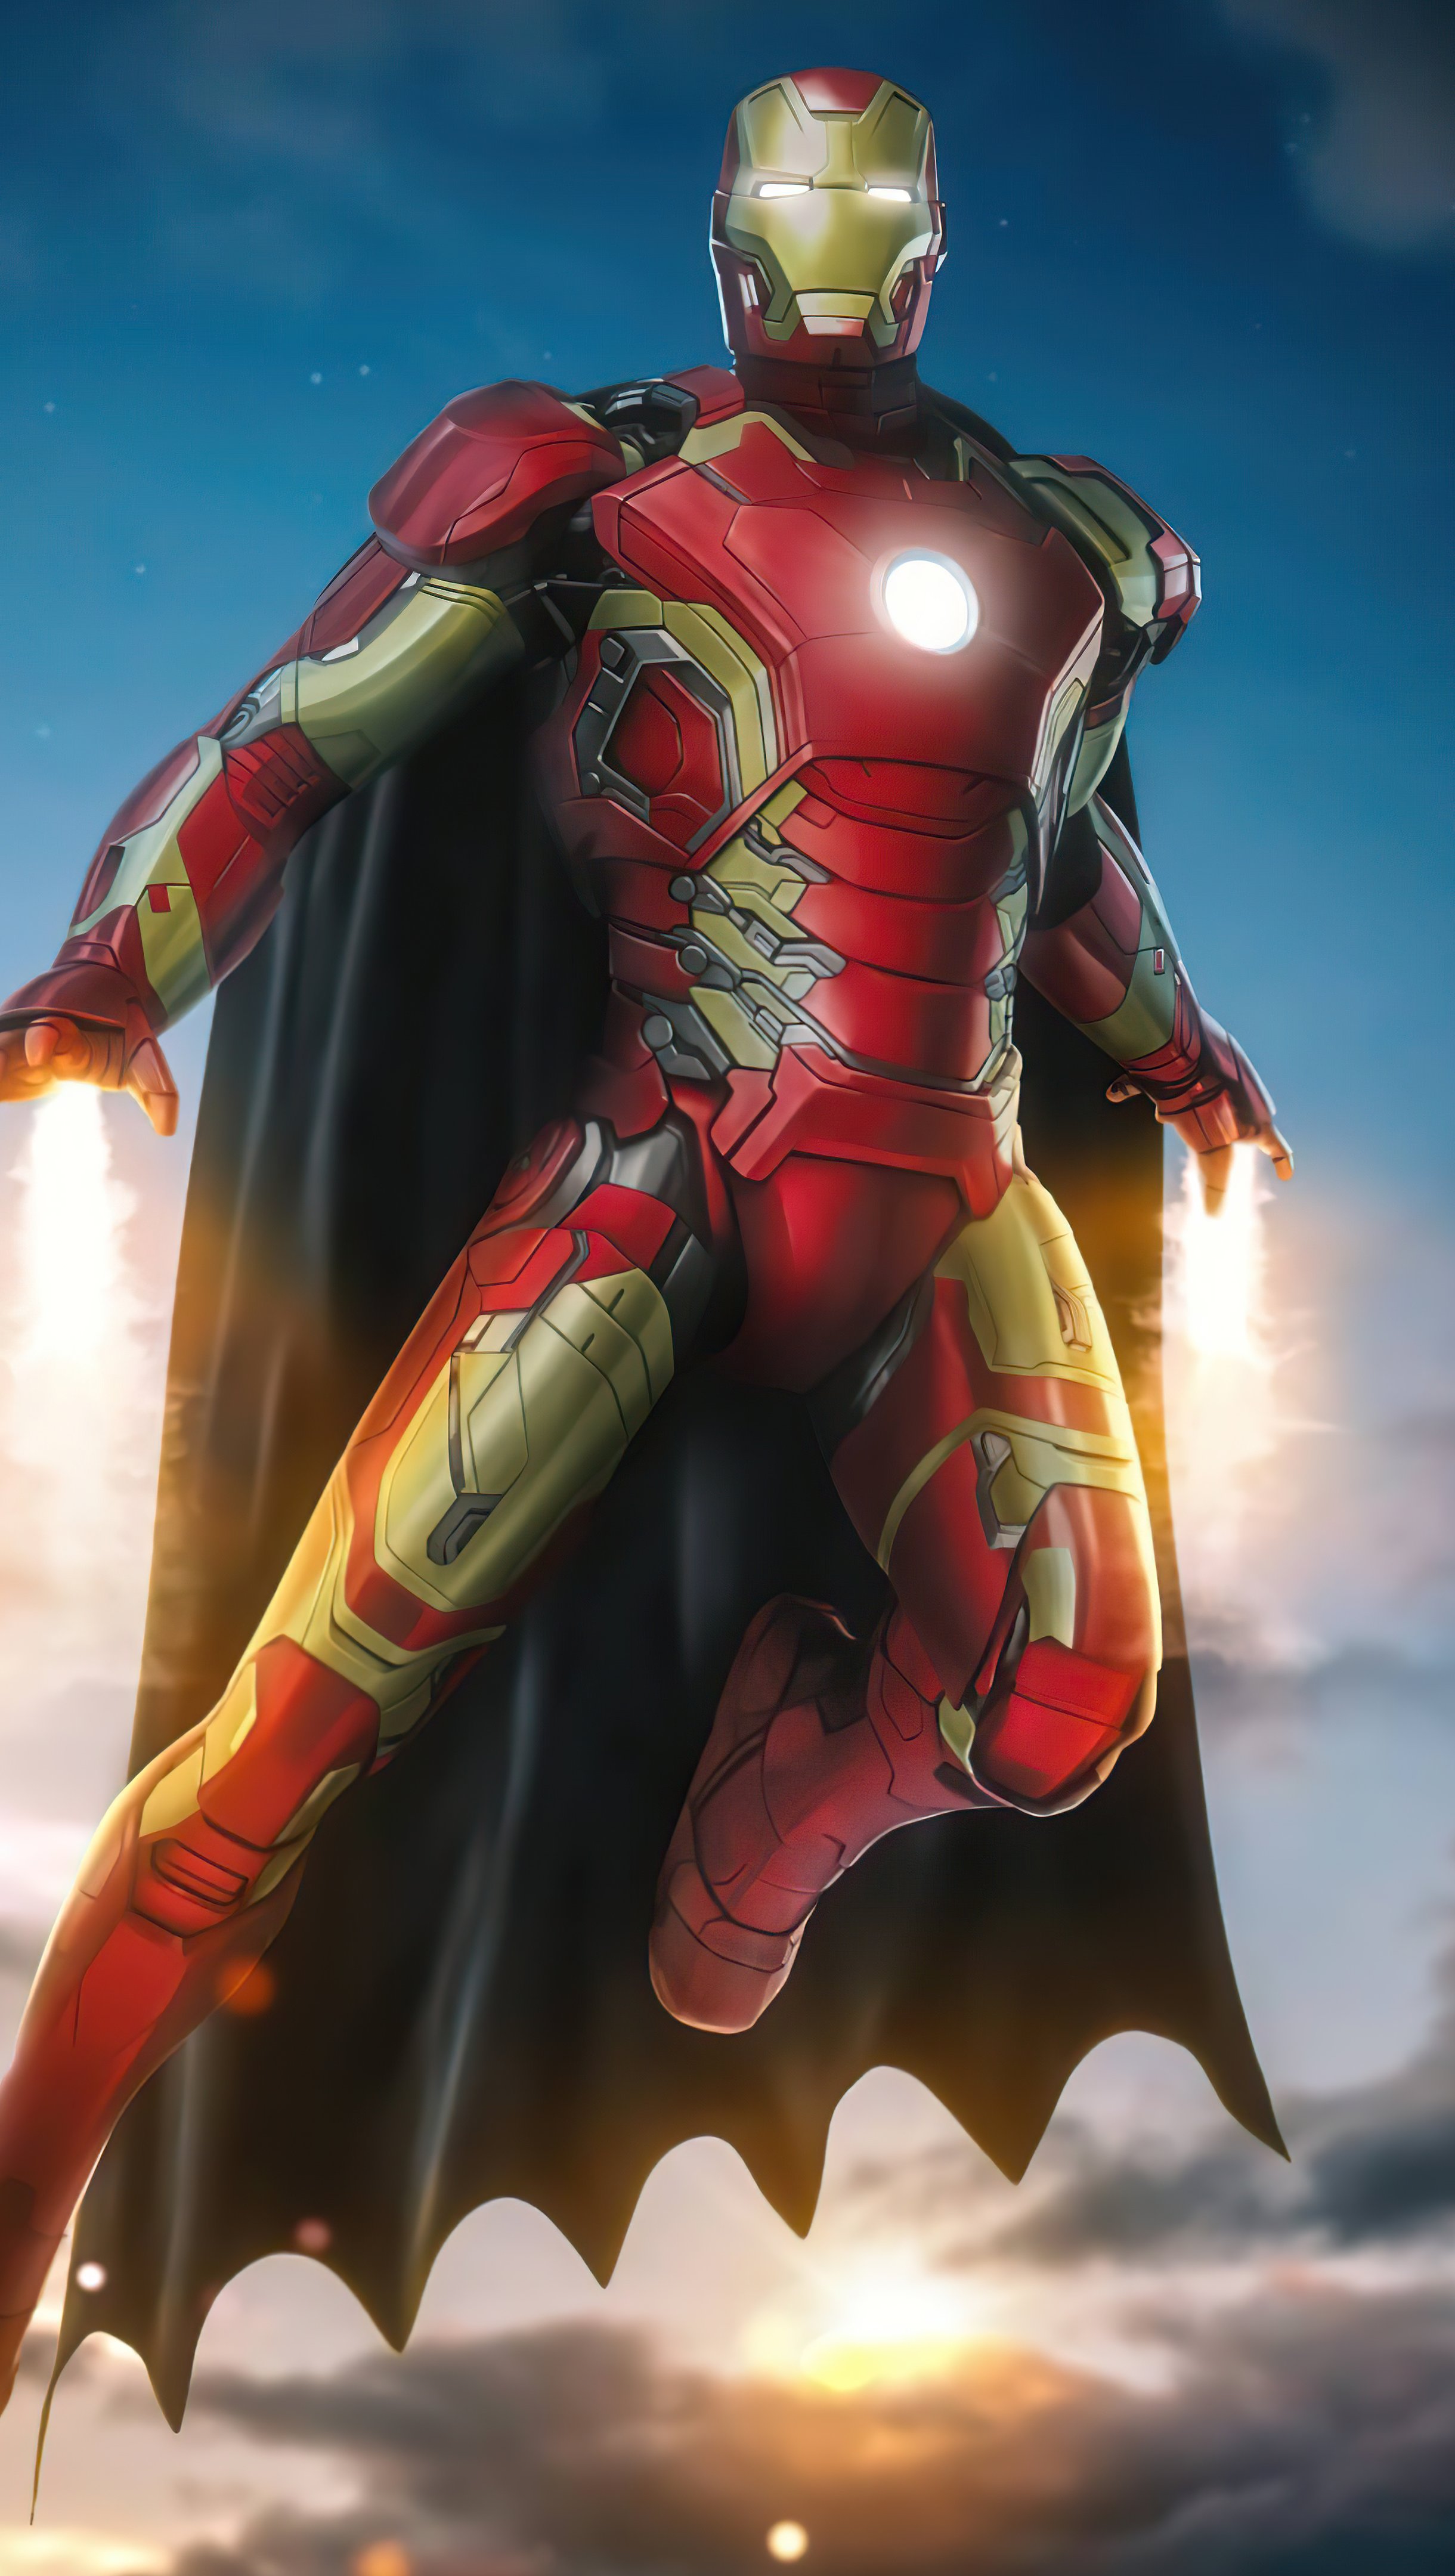 Wallpaper Iron Man with Batman cape Vertical